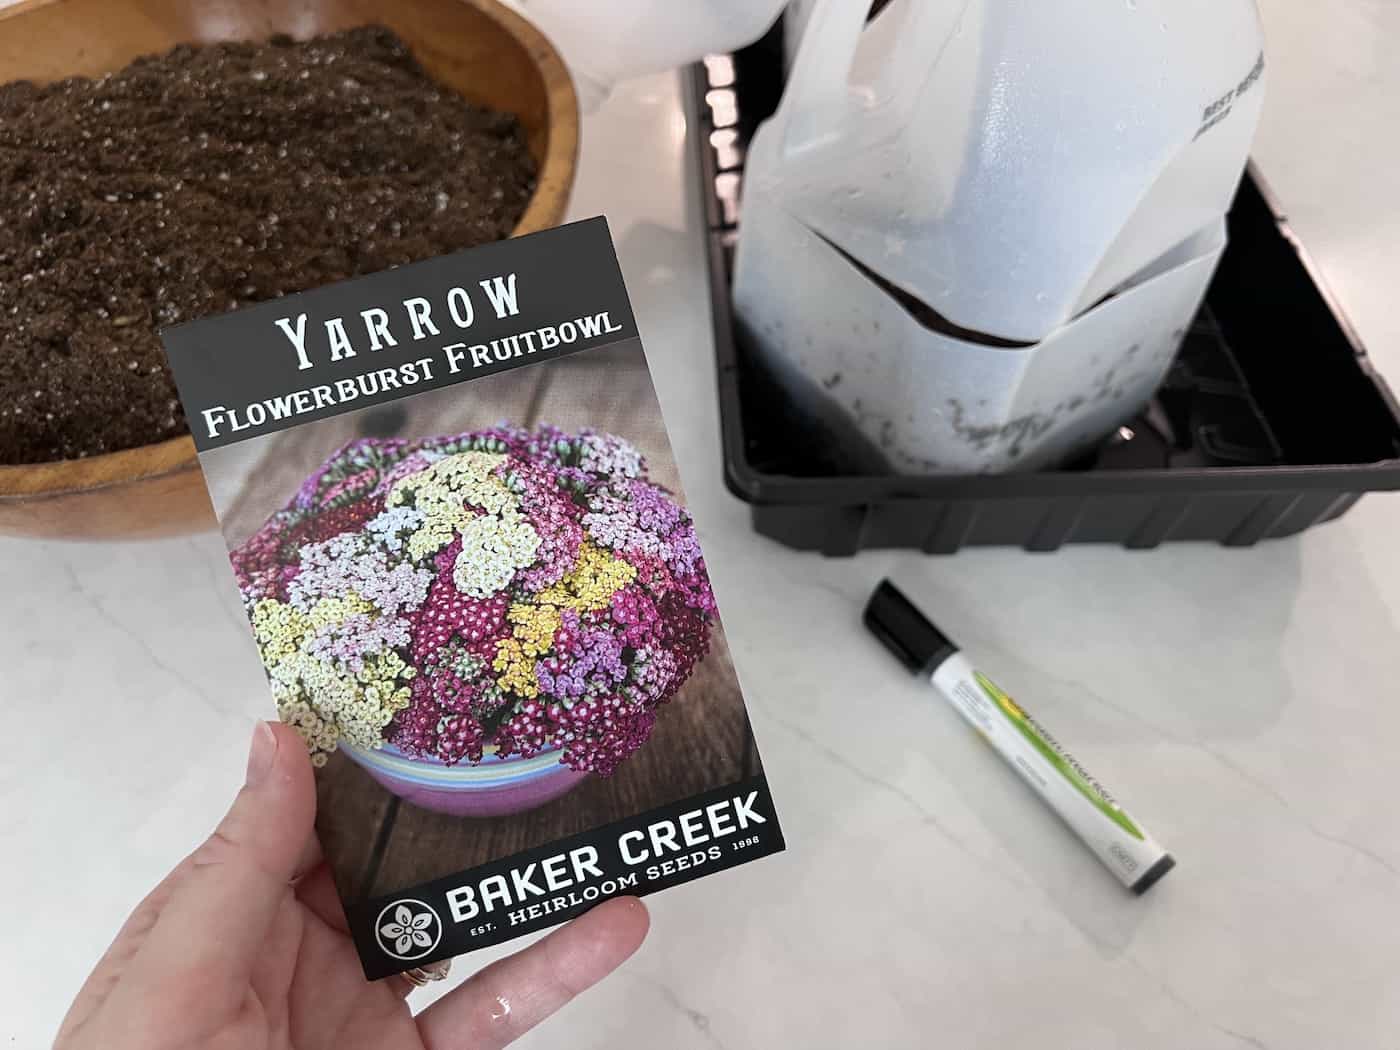 Yarrow seed packet - baker creek -flowerburst fruitbowl